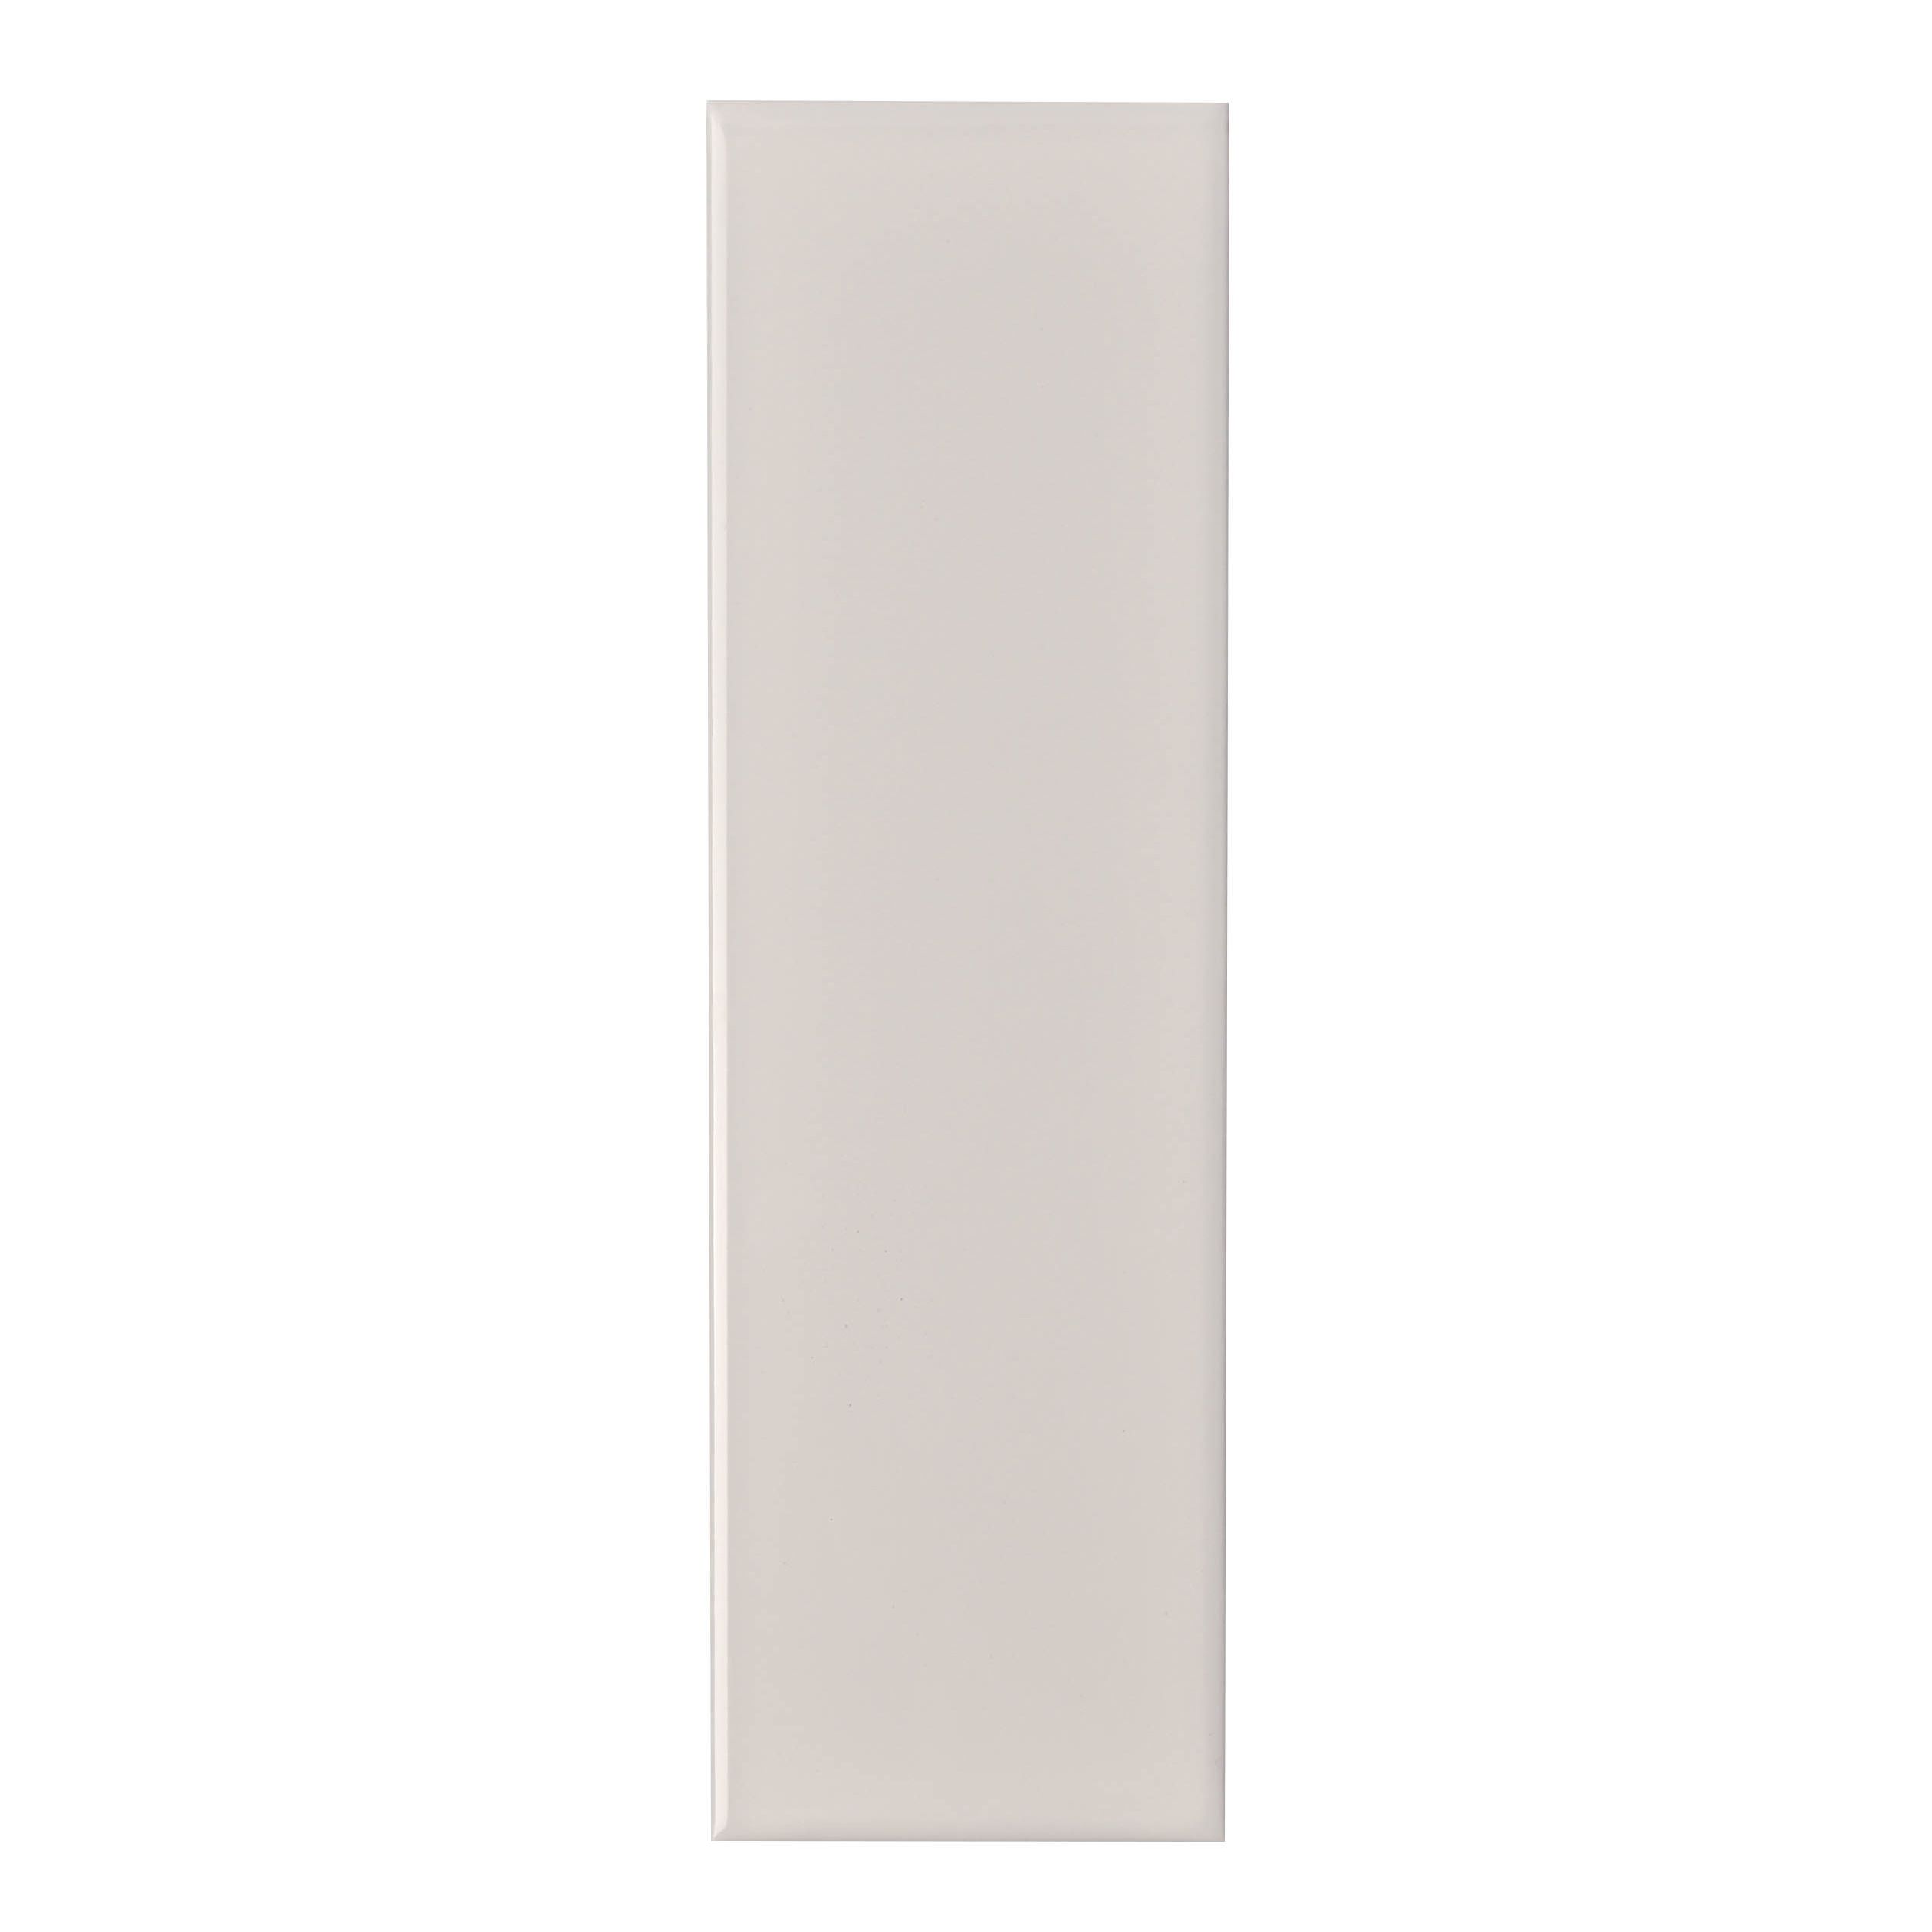 Johnson Tiles Mayfair White Gloss Ceramic Indoor Wall Tile, Pack of 54, (L)245mm (W)75mm